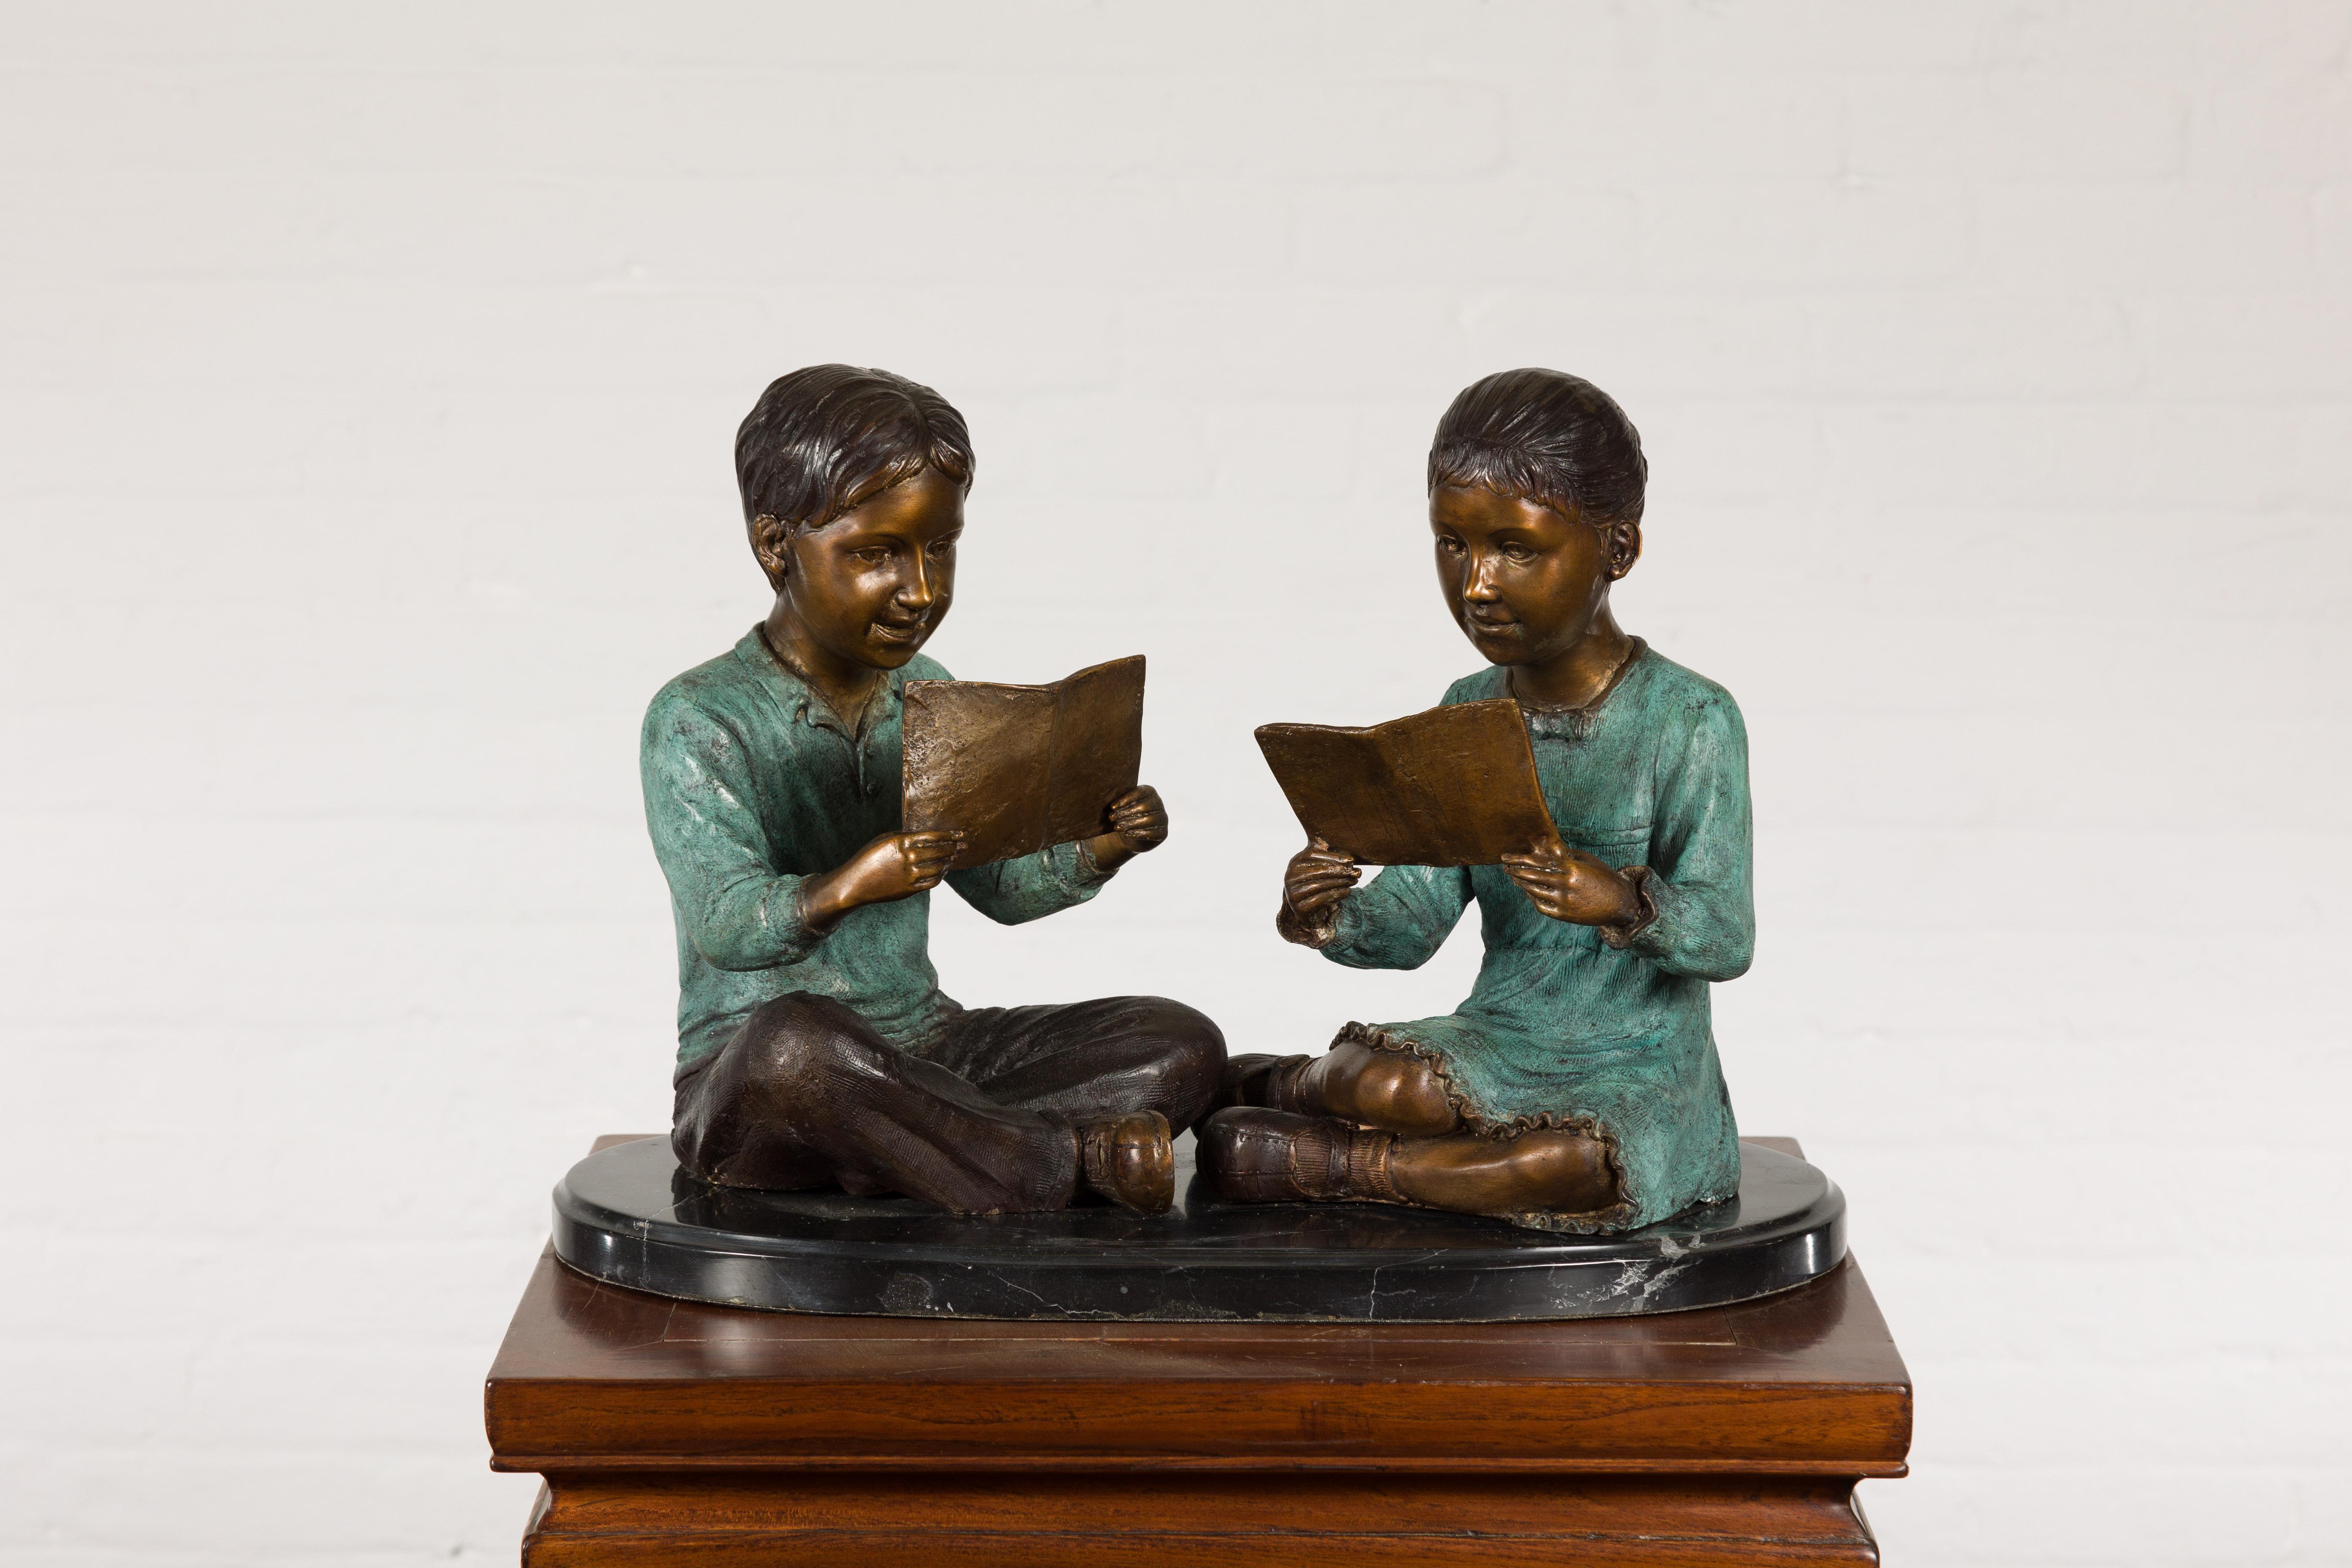 Junge und Mädchen lesen ein Buch, zeitgenössische Bronzeskulptur auf schwarzem Marmorsockel. Es handelt sich um eine laufende Produktion mit einer Vorlaufzeit von 19 bis 20 Wochen. Feiern Sie die Freude an der Geschwisterschaft und die Schönheit des